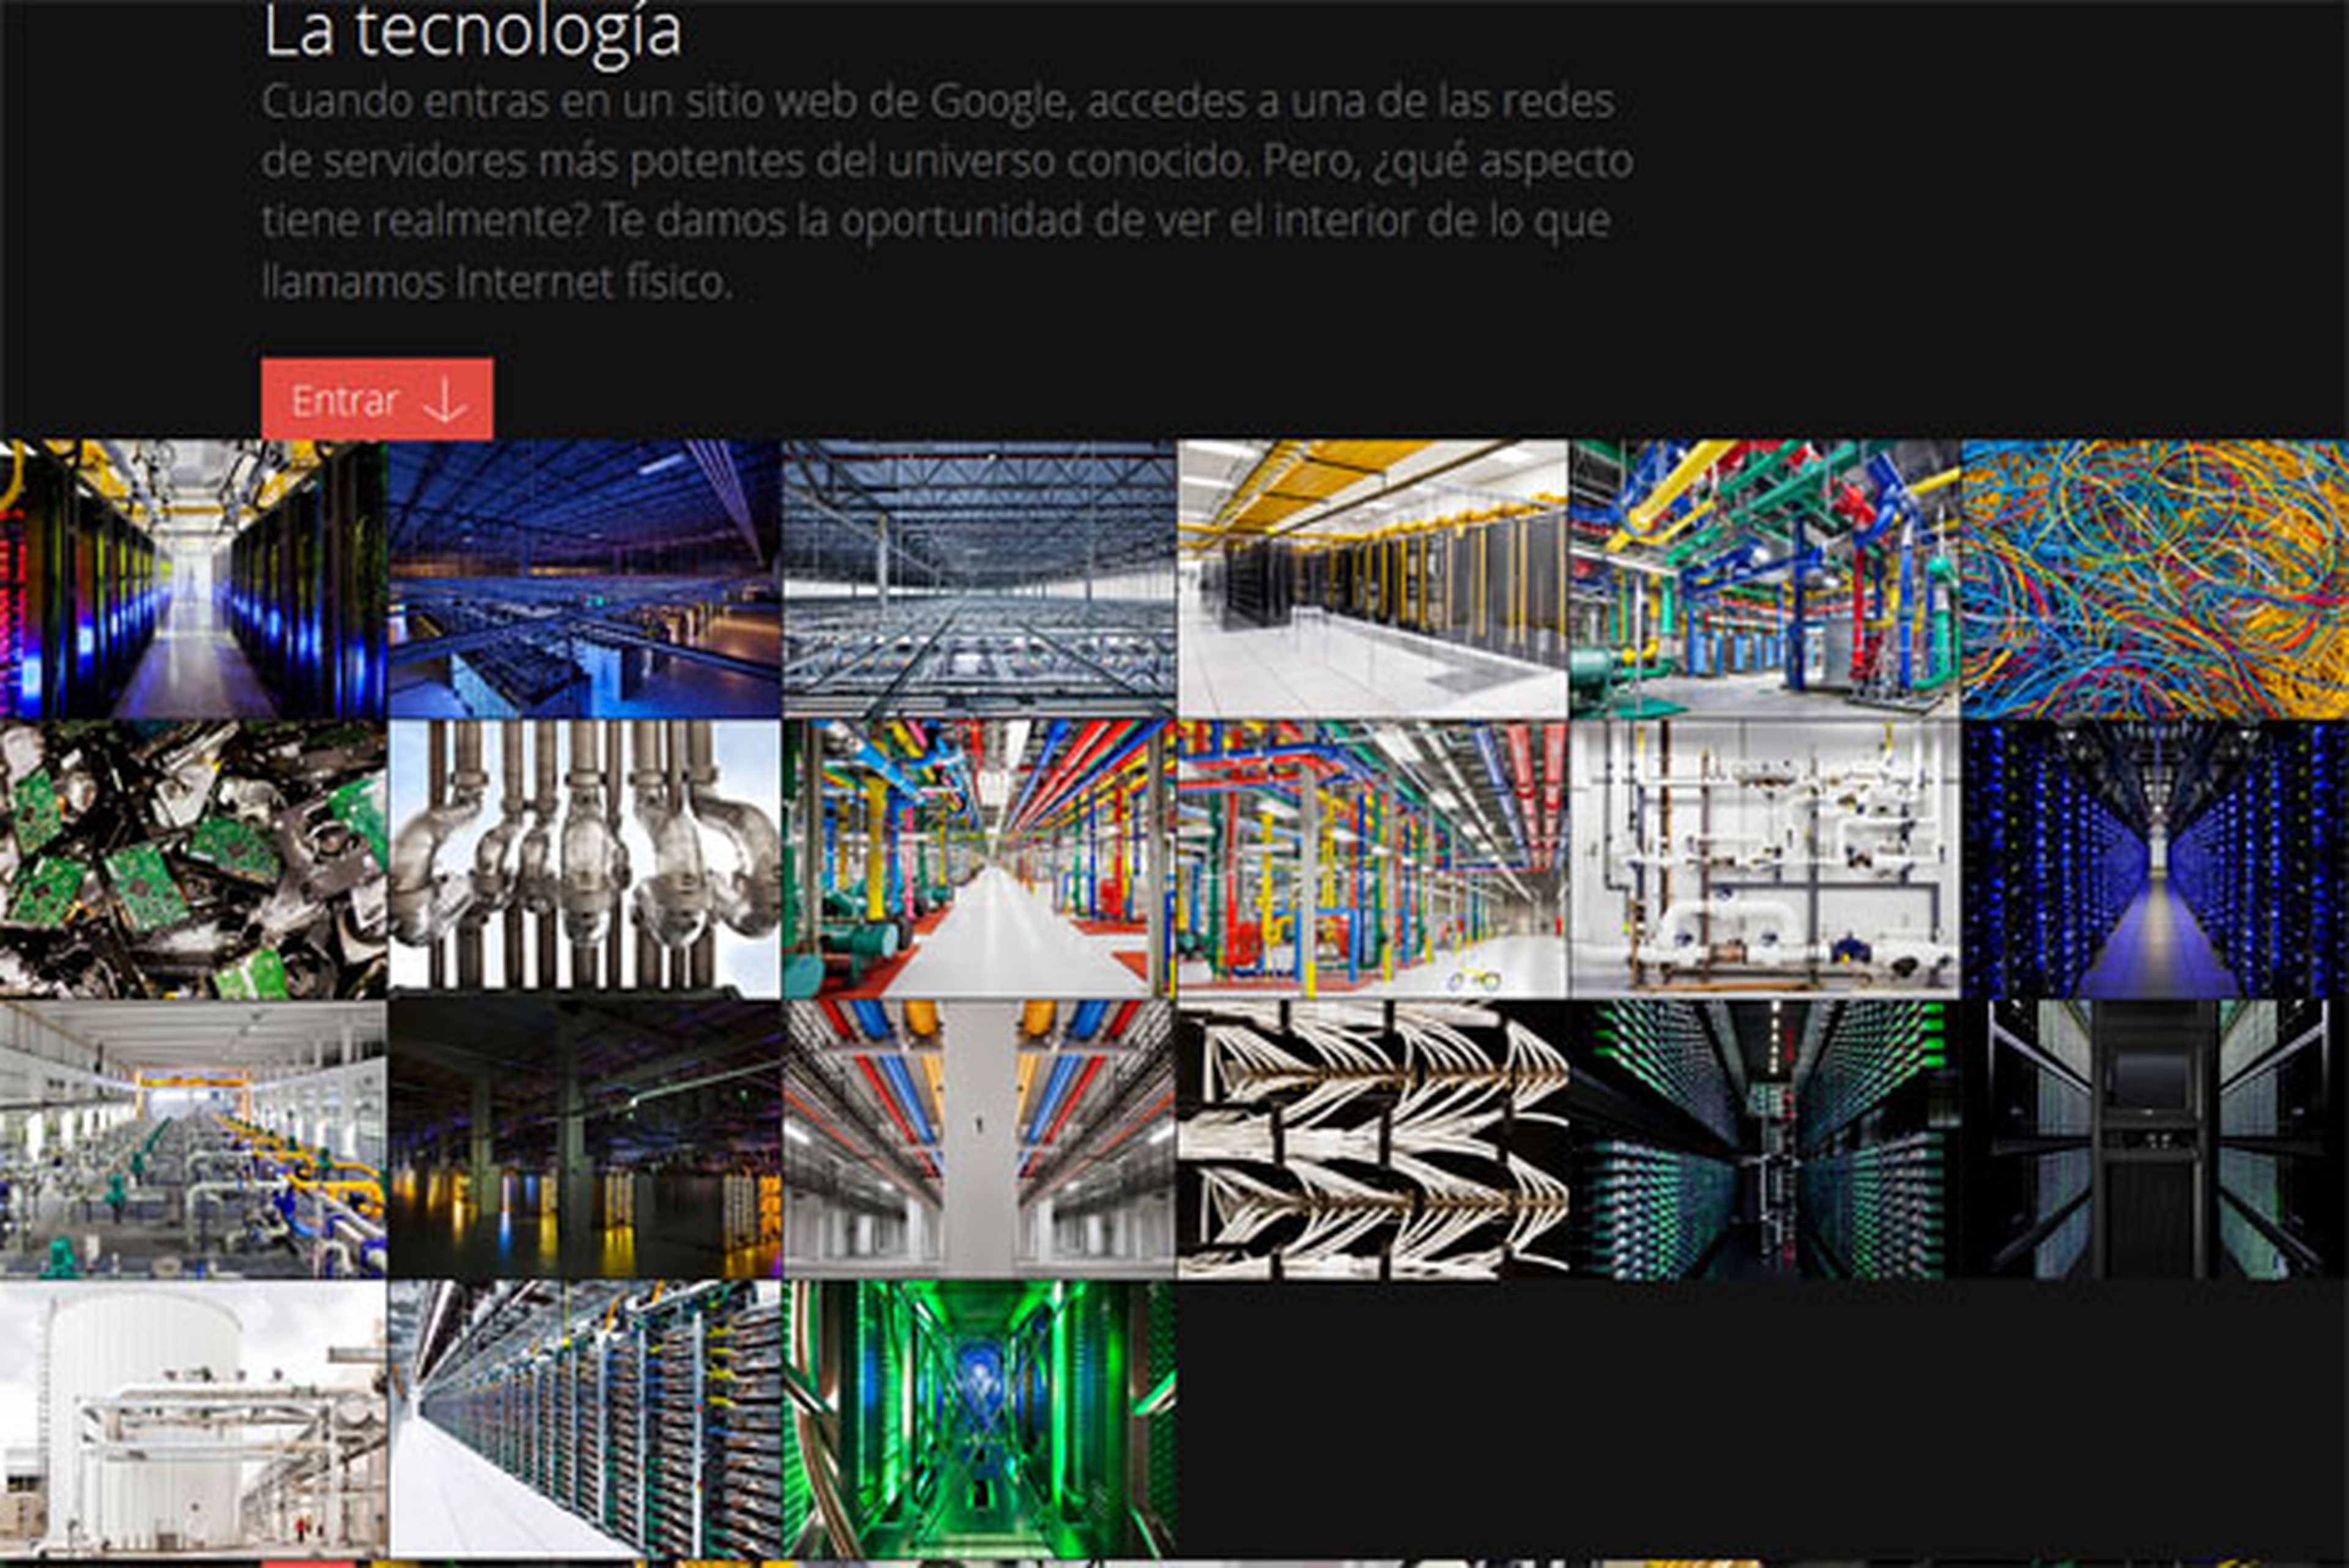 Centro de datos de Google